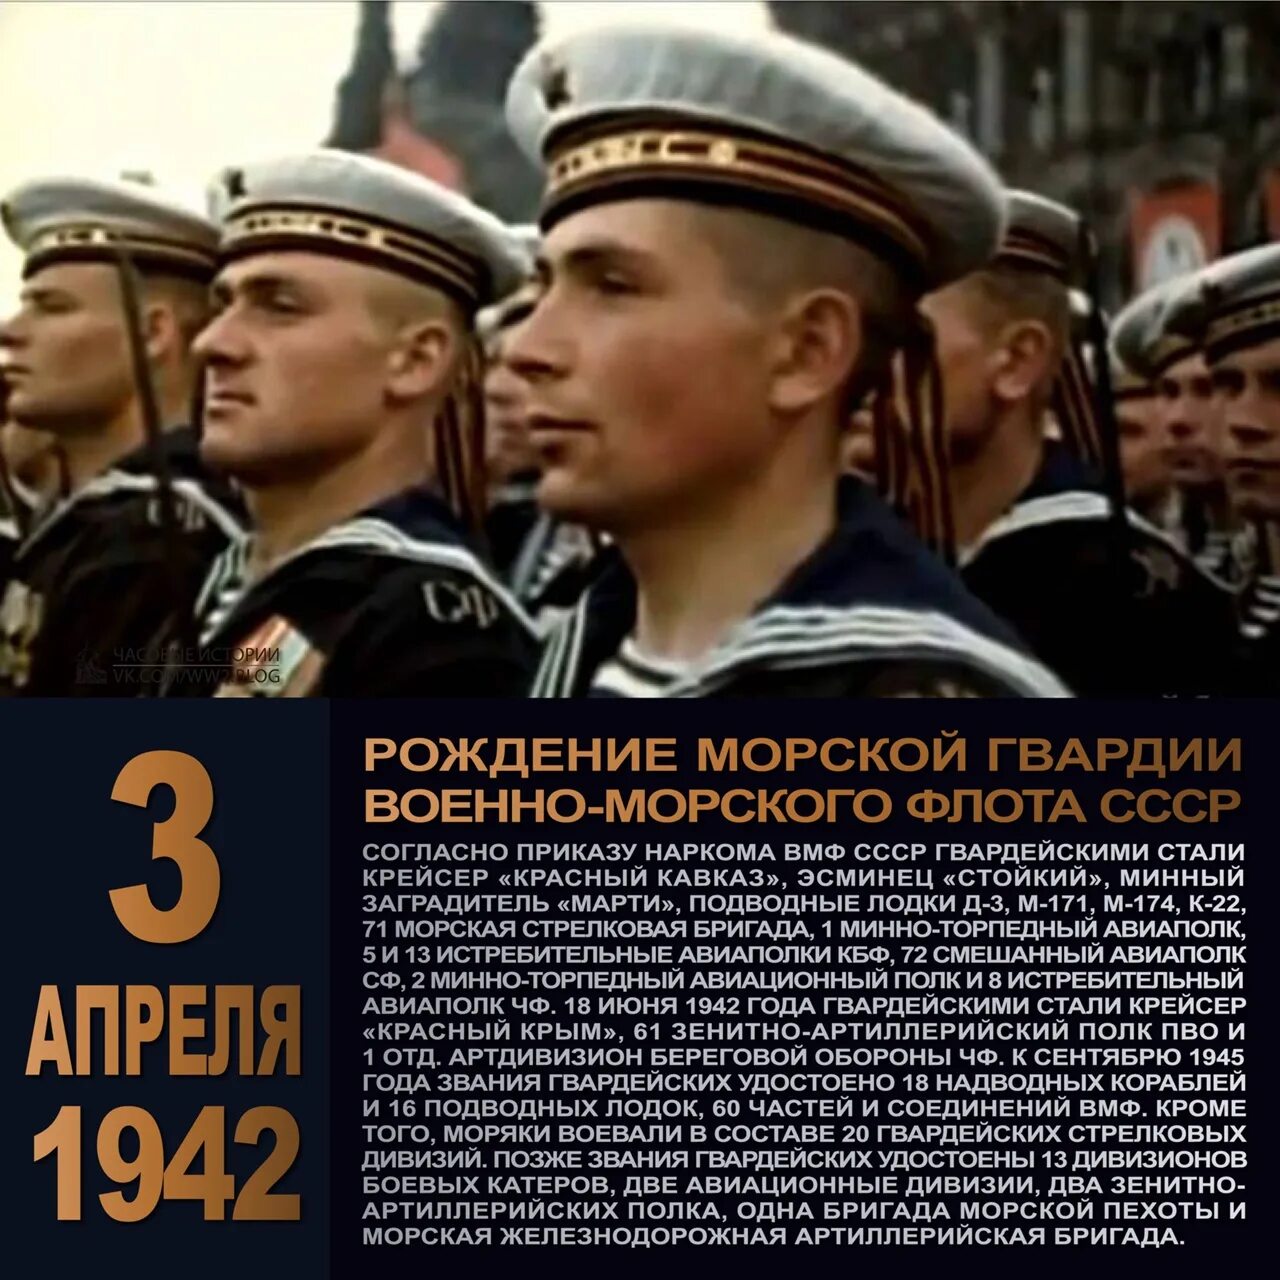 Какой сегодня 3 апреля. Морская гвардия 3.04.1942. День рождение морской гвардии. День рождения Советской морской гвардии. 3 Апреля день морской гвардии.